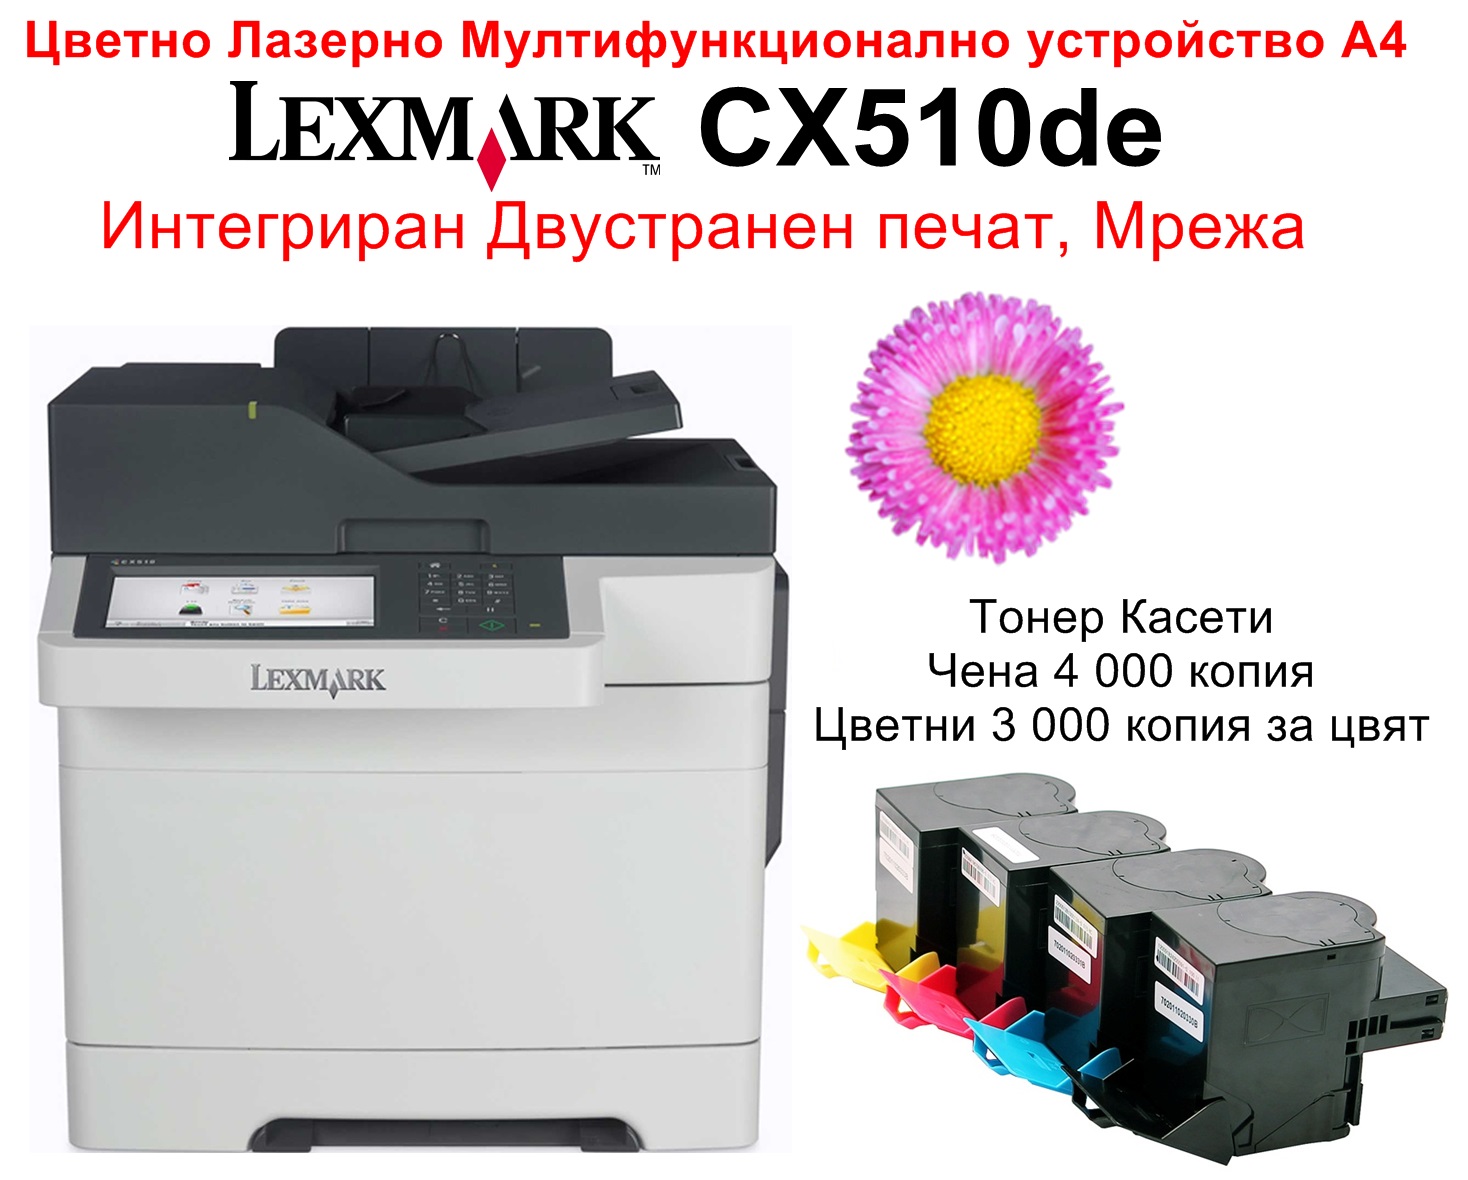 All-in-One Printer Lexmark CX510de